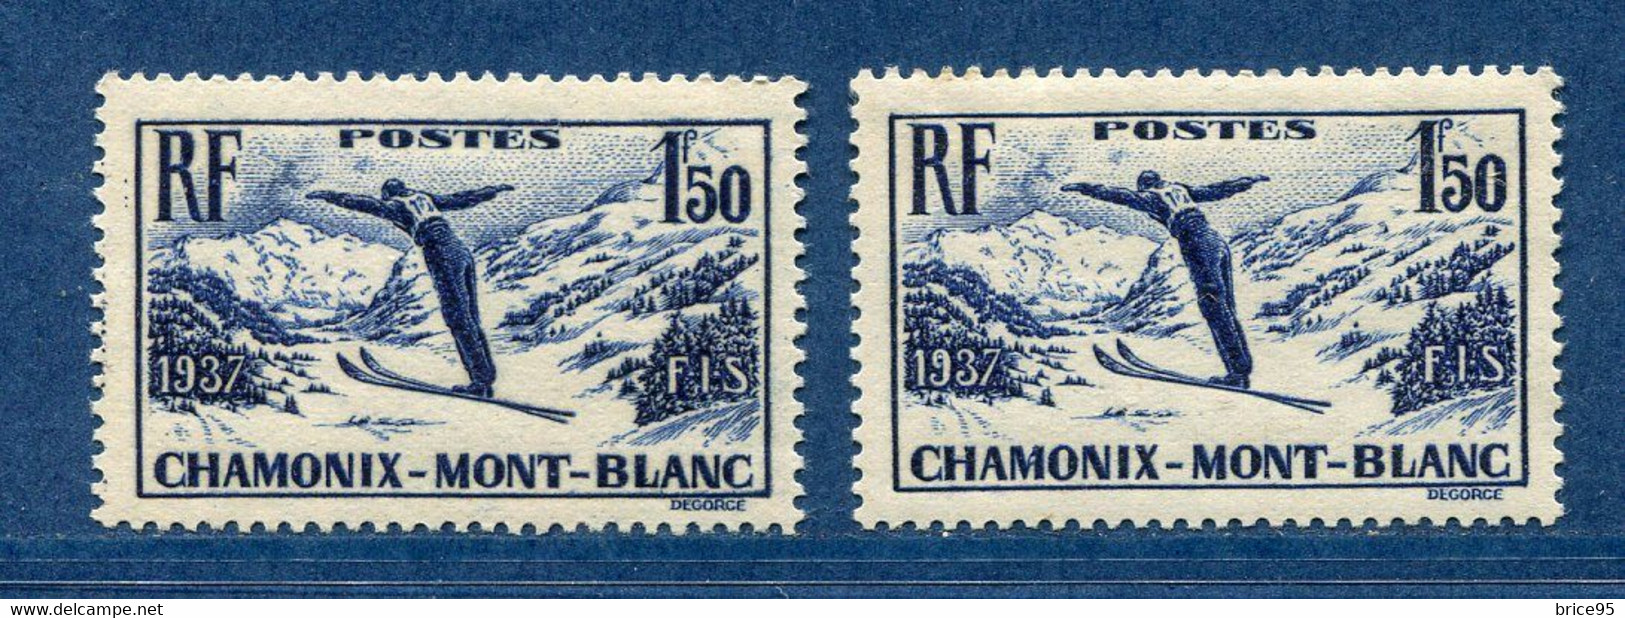 ⭐ France - Variété - YT N° 334 - Couleurs - Papier Jaunatre - Neuf Sans Charnière - 1937 ⭐ - Unused Stamps